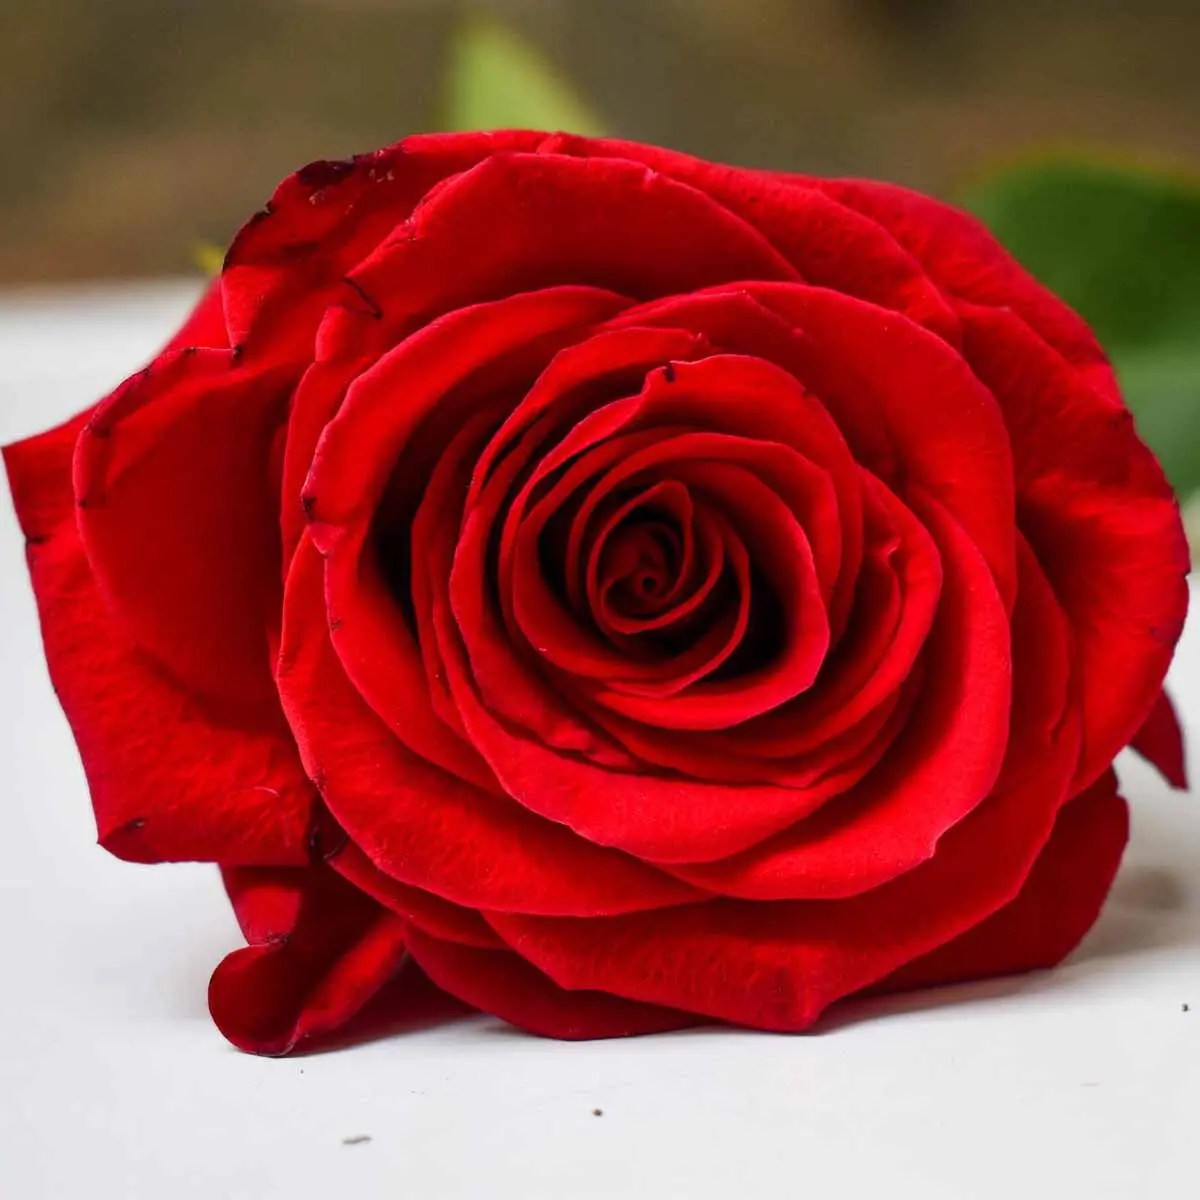 Rose fiore: bellezza e durata delle rose